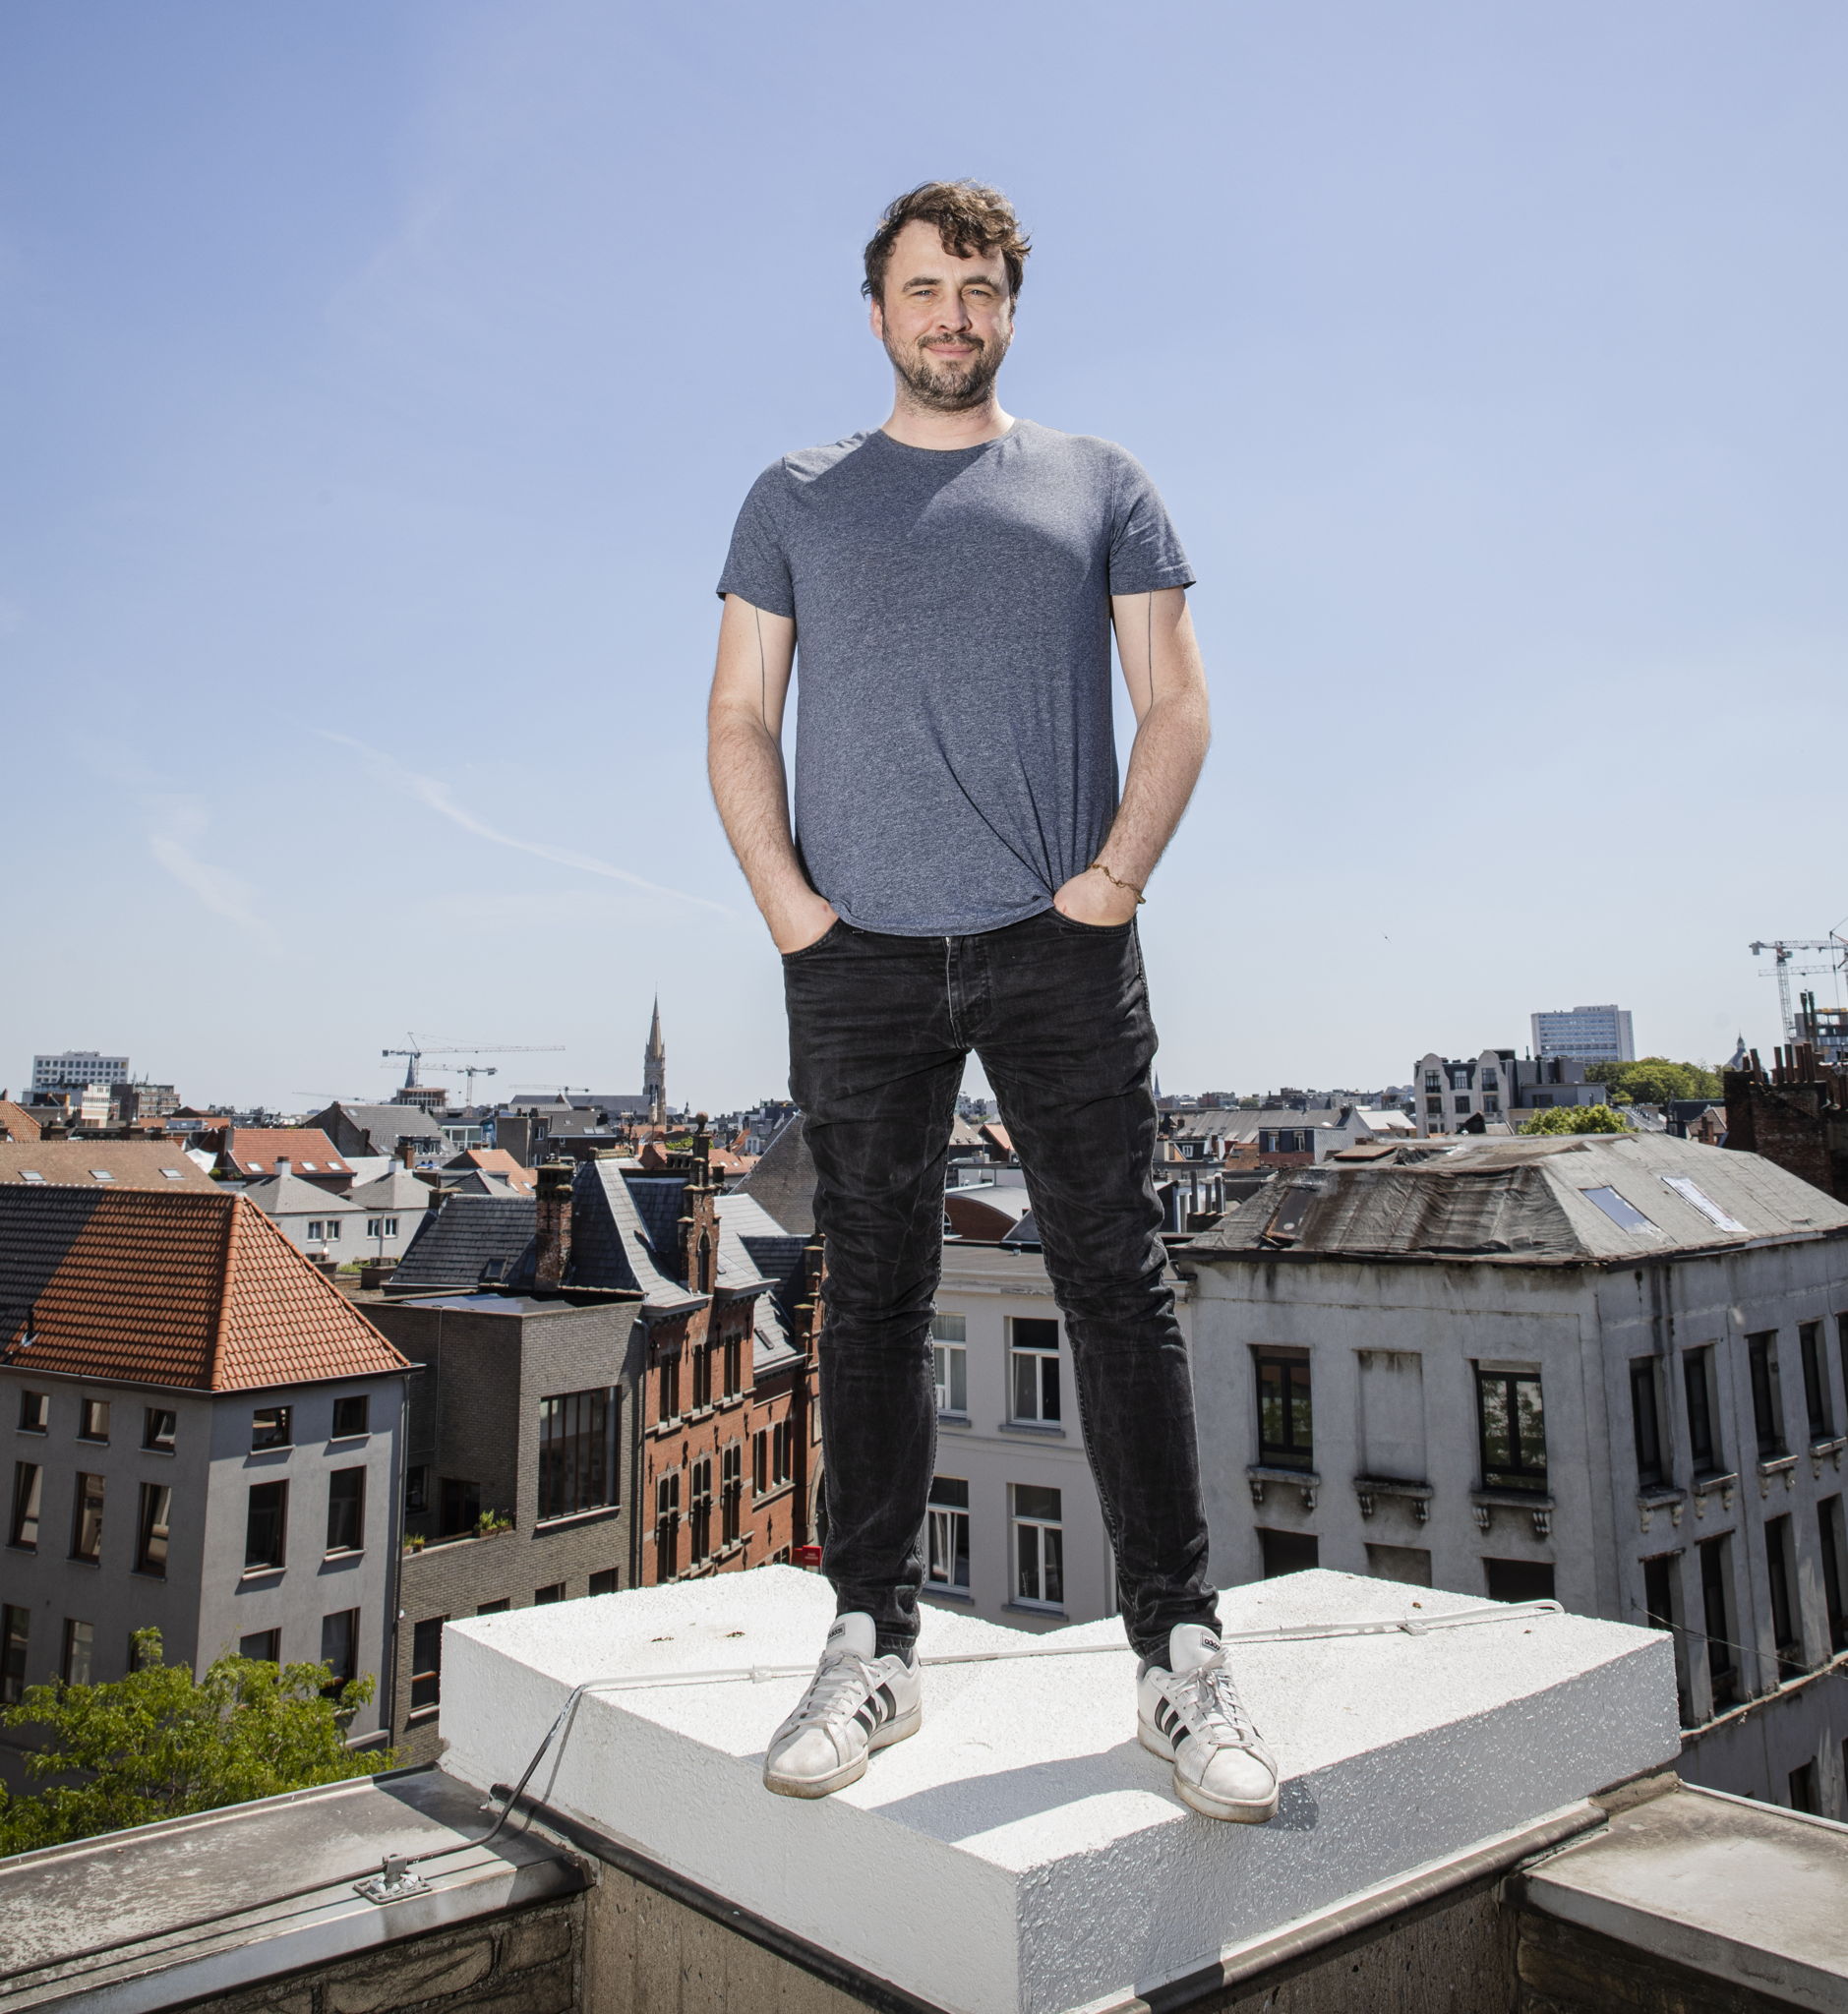 Lode Uytterschaut, CEO and founder ​
Start it @KBC (credit Wim Kempenaers)